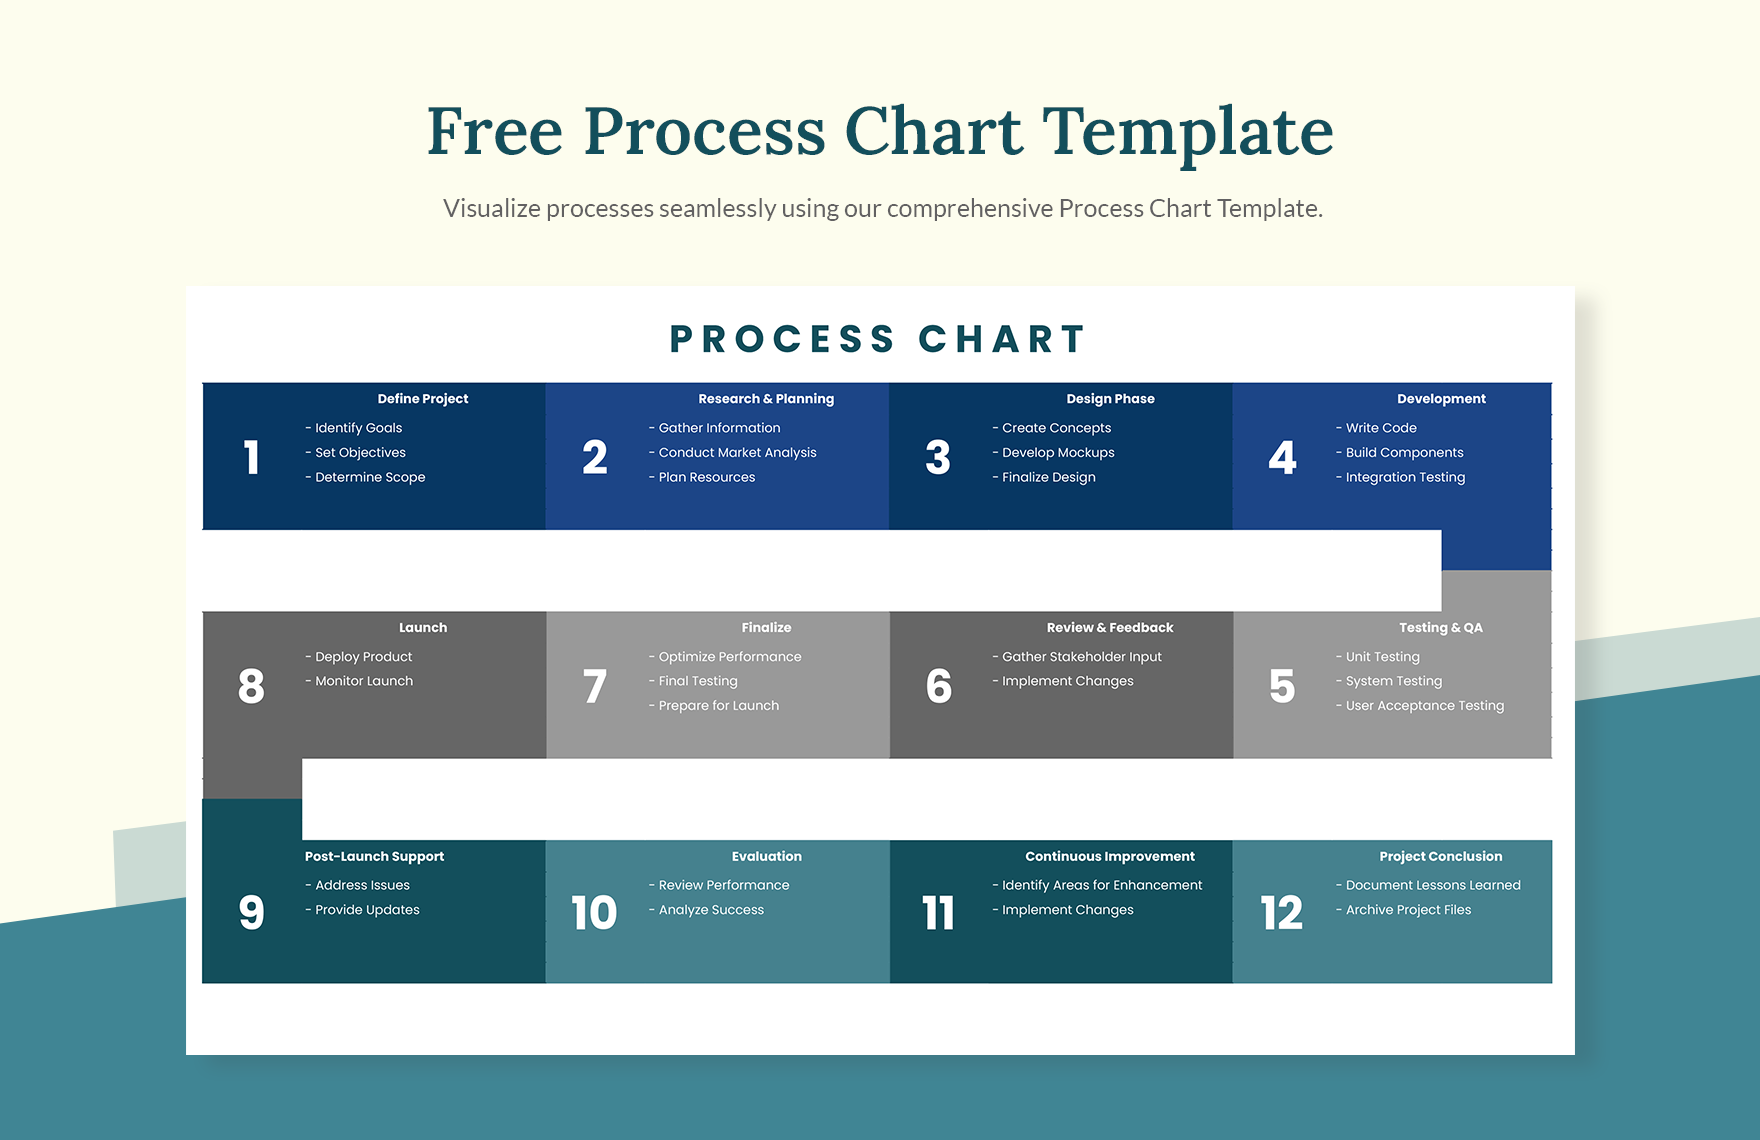 Free Process Chart Template